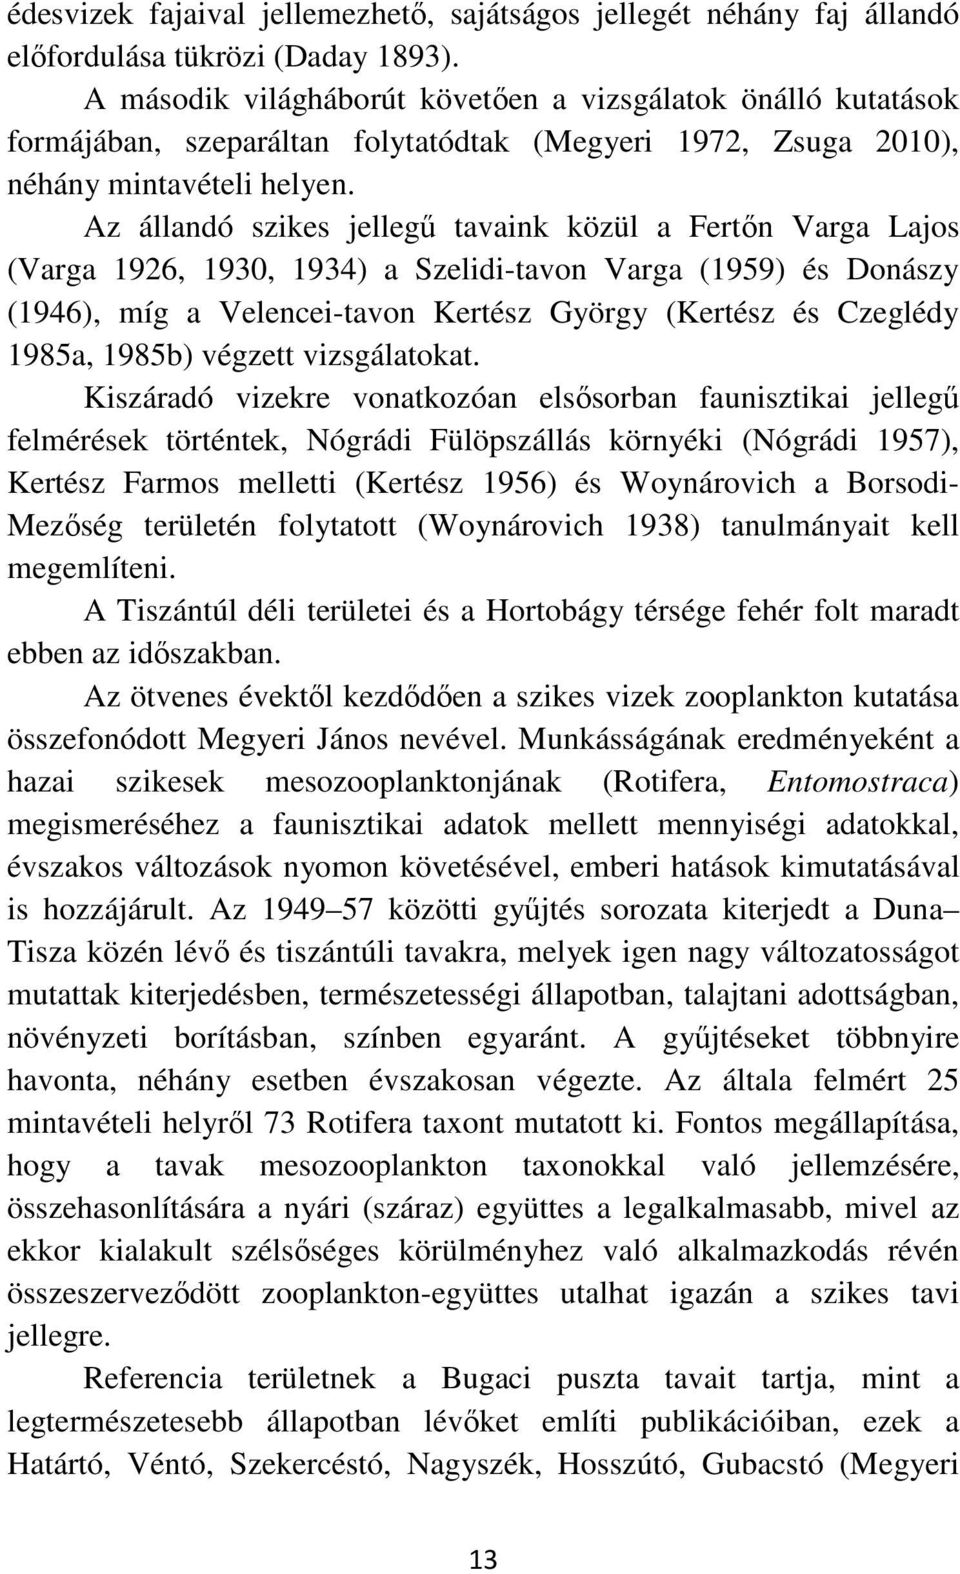 Az állandó szikes jellegű tavaink közül a Fertőn Varga Lajos (Varga 1926, 1930, 1934) a Szelidi-tavon Varga (1959) és Donászy (1946), míg a Velencei-tavon Kertész György (Kertész és Czeglédy 1985a,